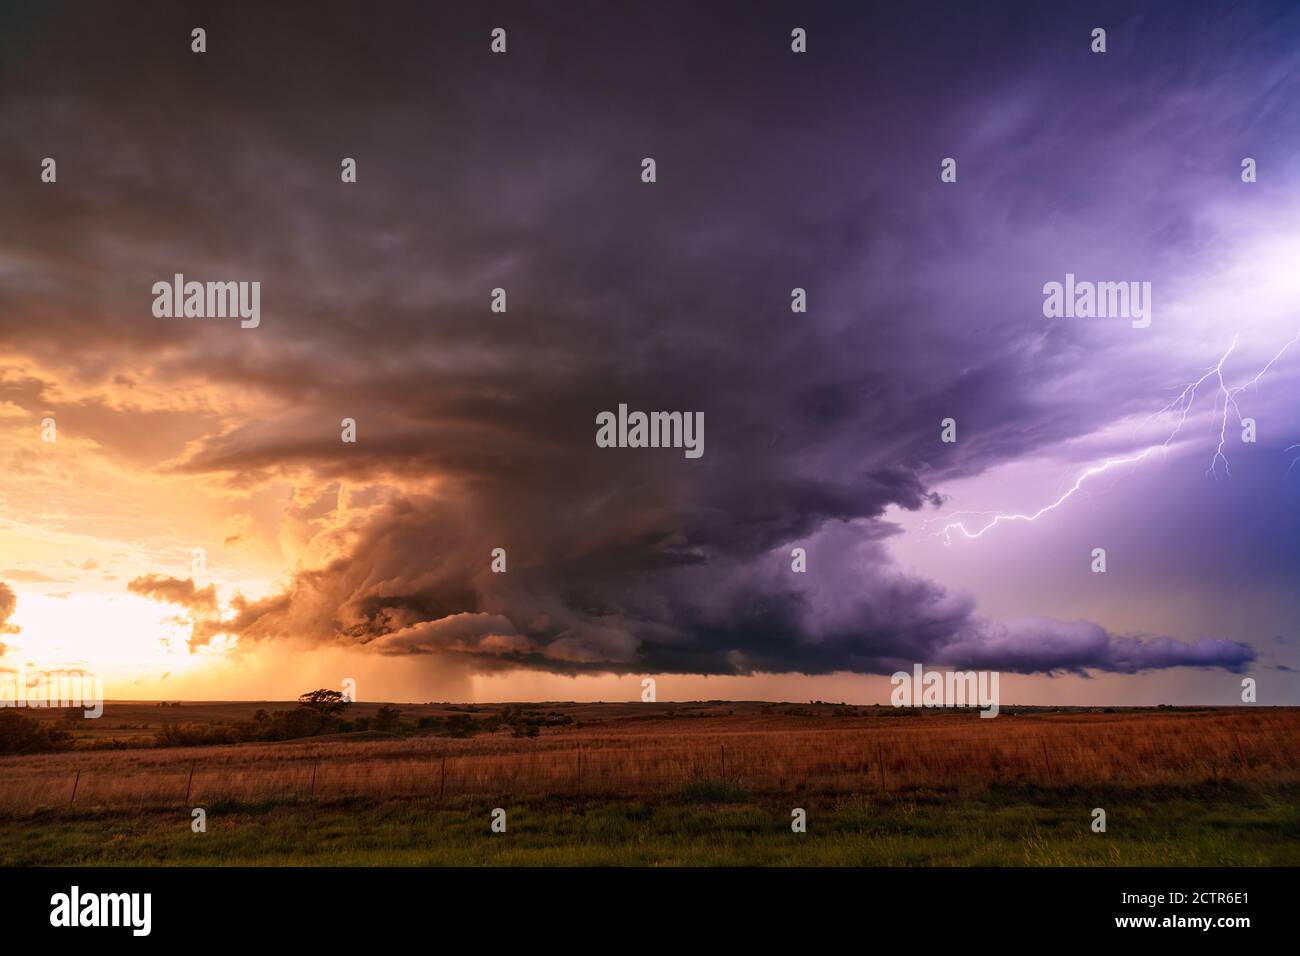 Paysage pittoresque avec des nuages supercellulaires d'orage et de la foudre dans un ciel de coucher de soleil près de fort City, Oklahoma Banque D'Images